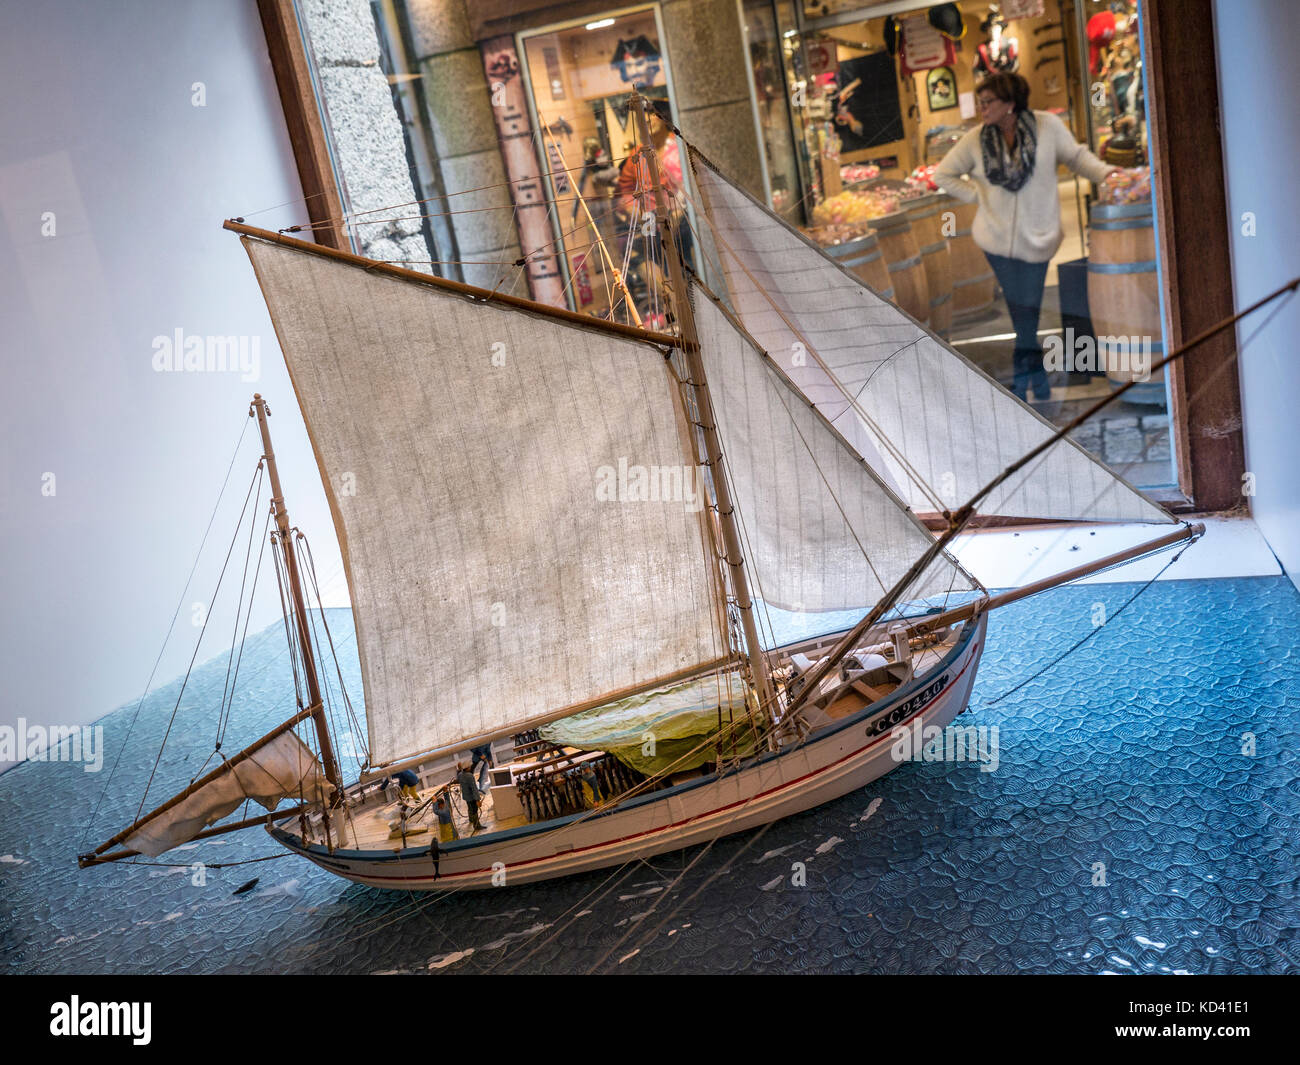 1900 Concarneau bateau de pêche français modèle d'échelle dans la fenêtre avec une galerie marchande en arrière-plan Concarneau Bretagne France Banque D'Images